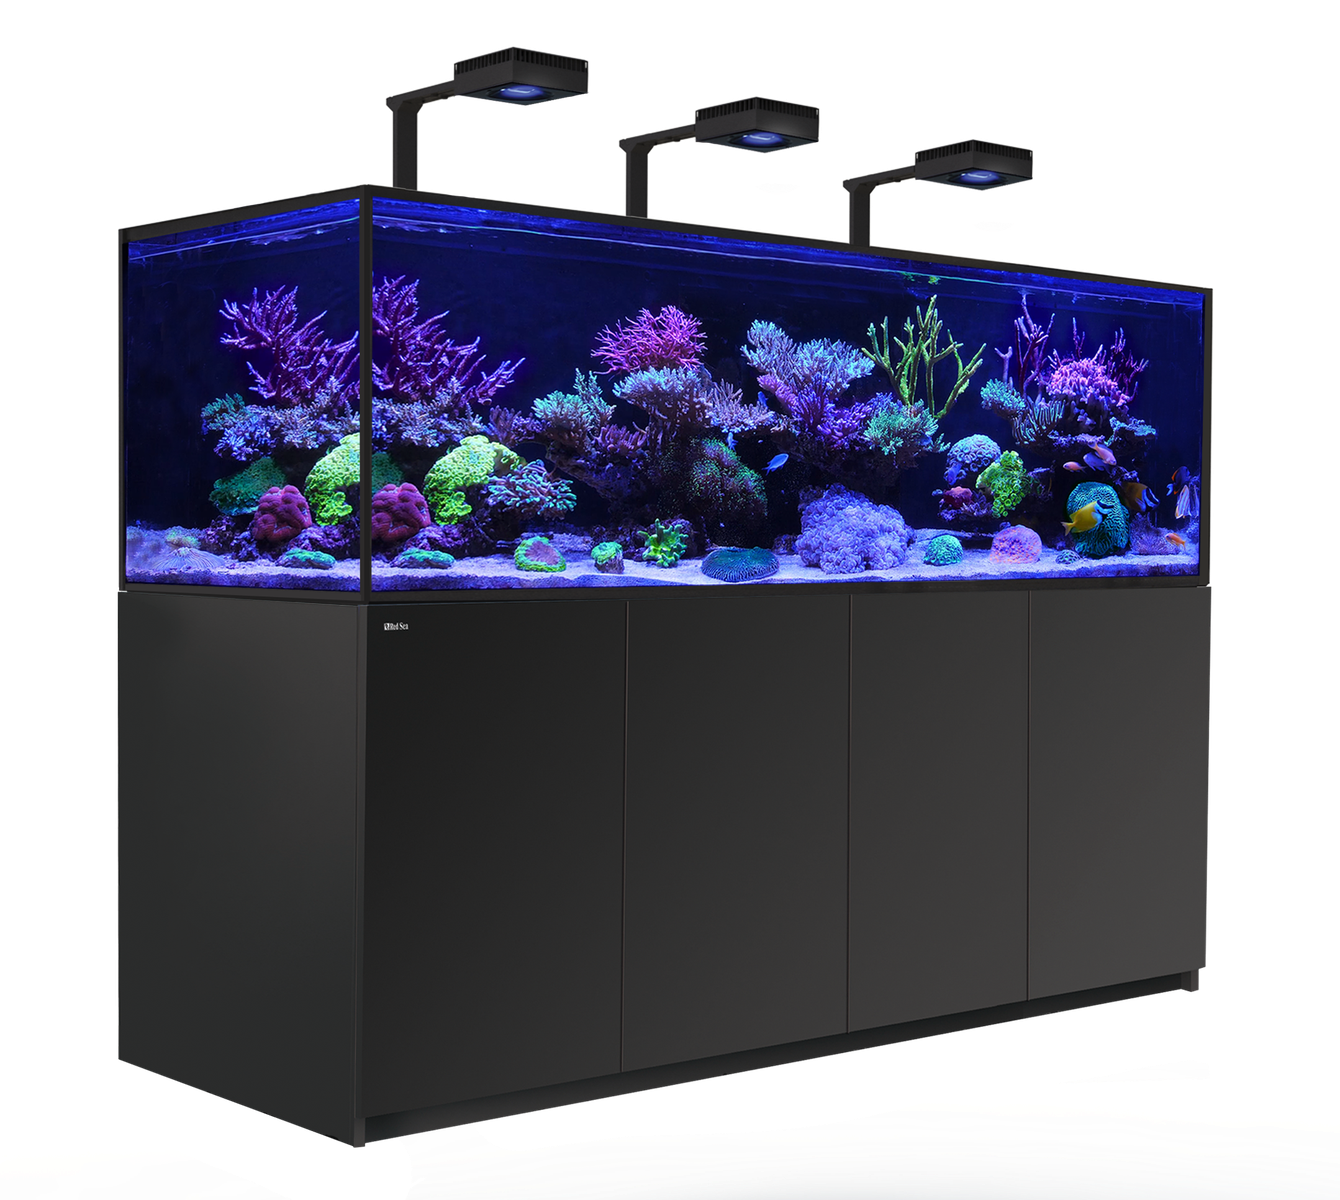 Aquarium Red Sea REEFER S-1000 G2+ Deluxe, 1000 Liter